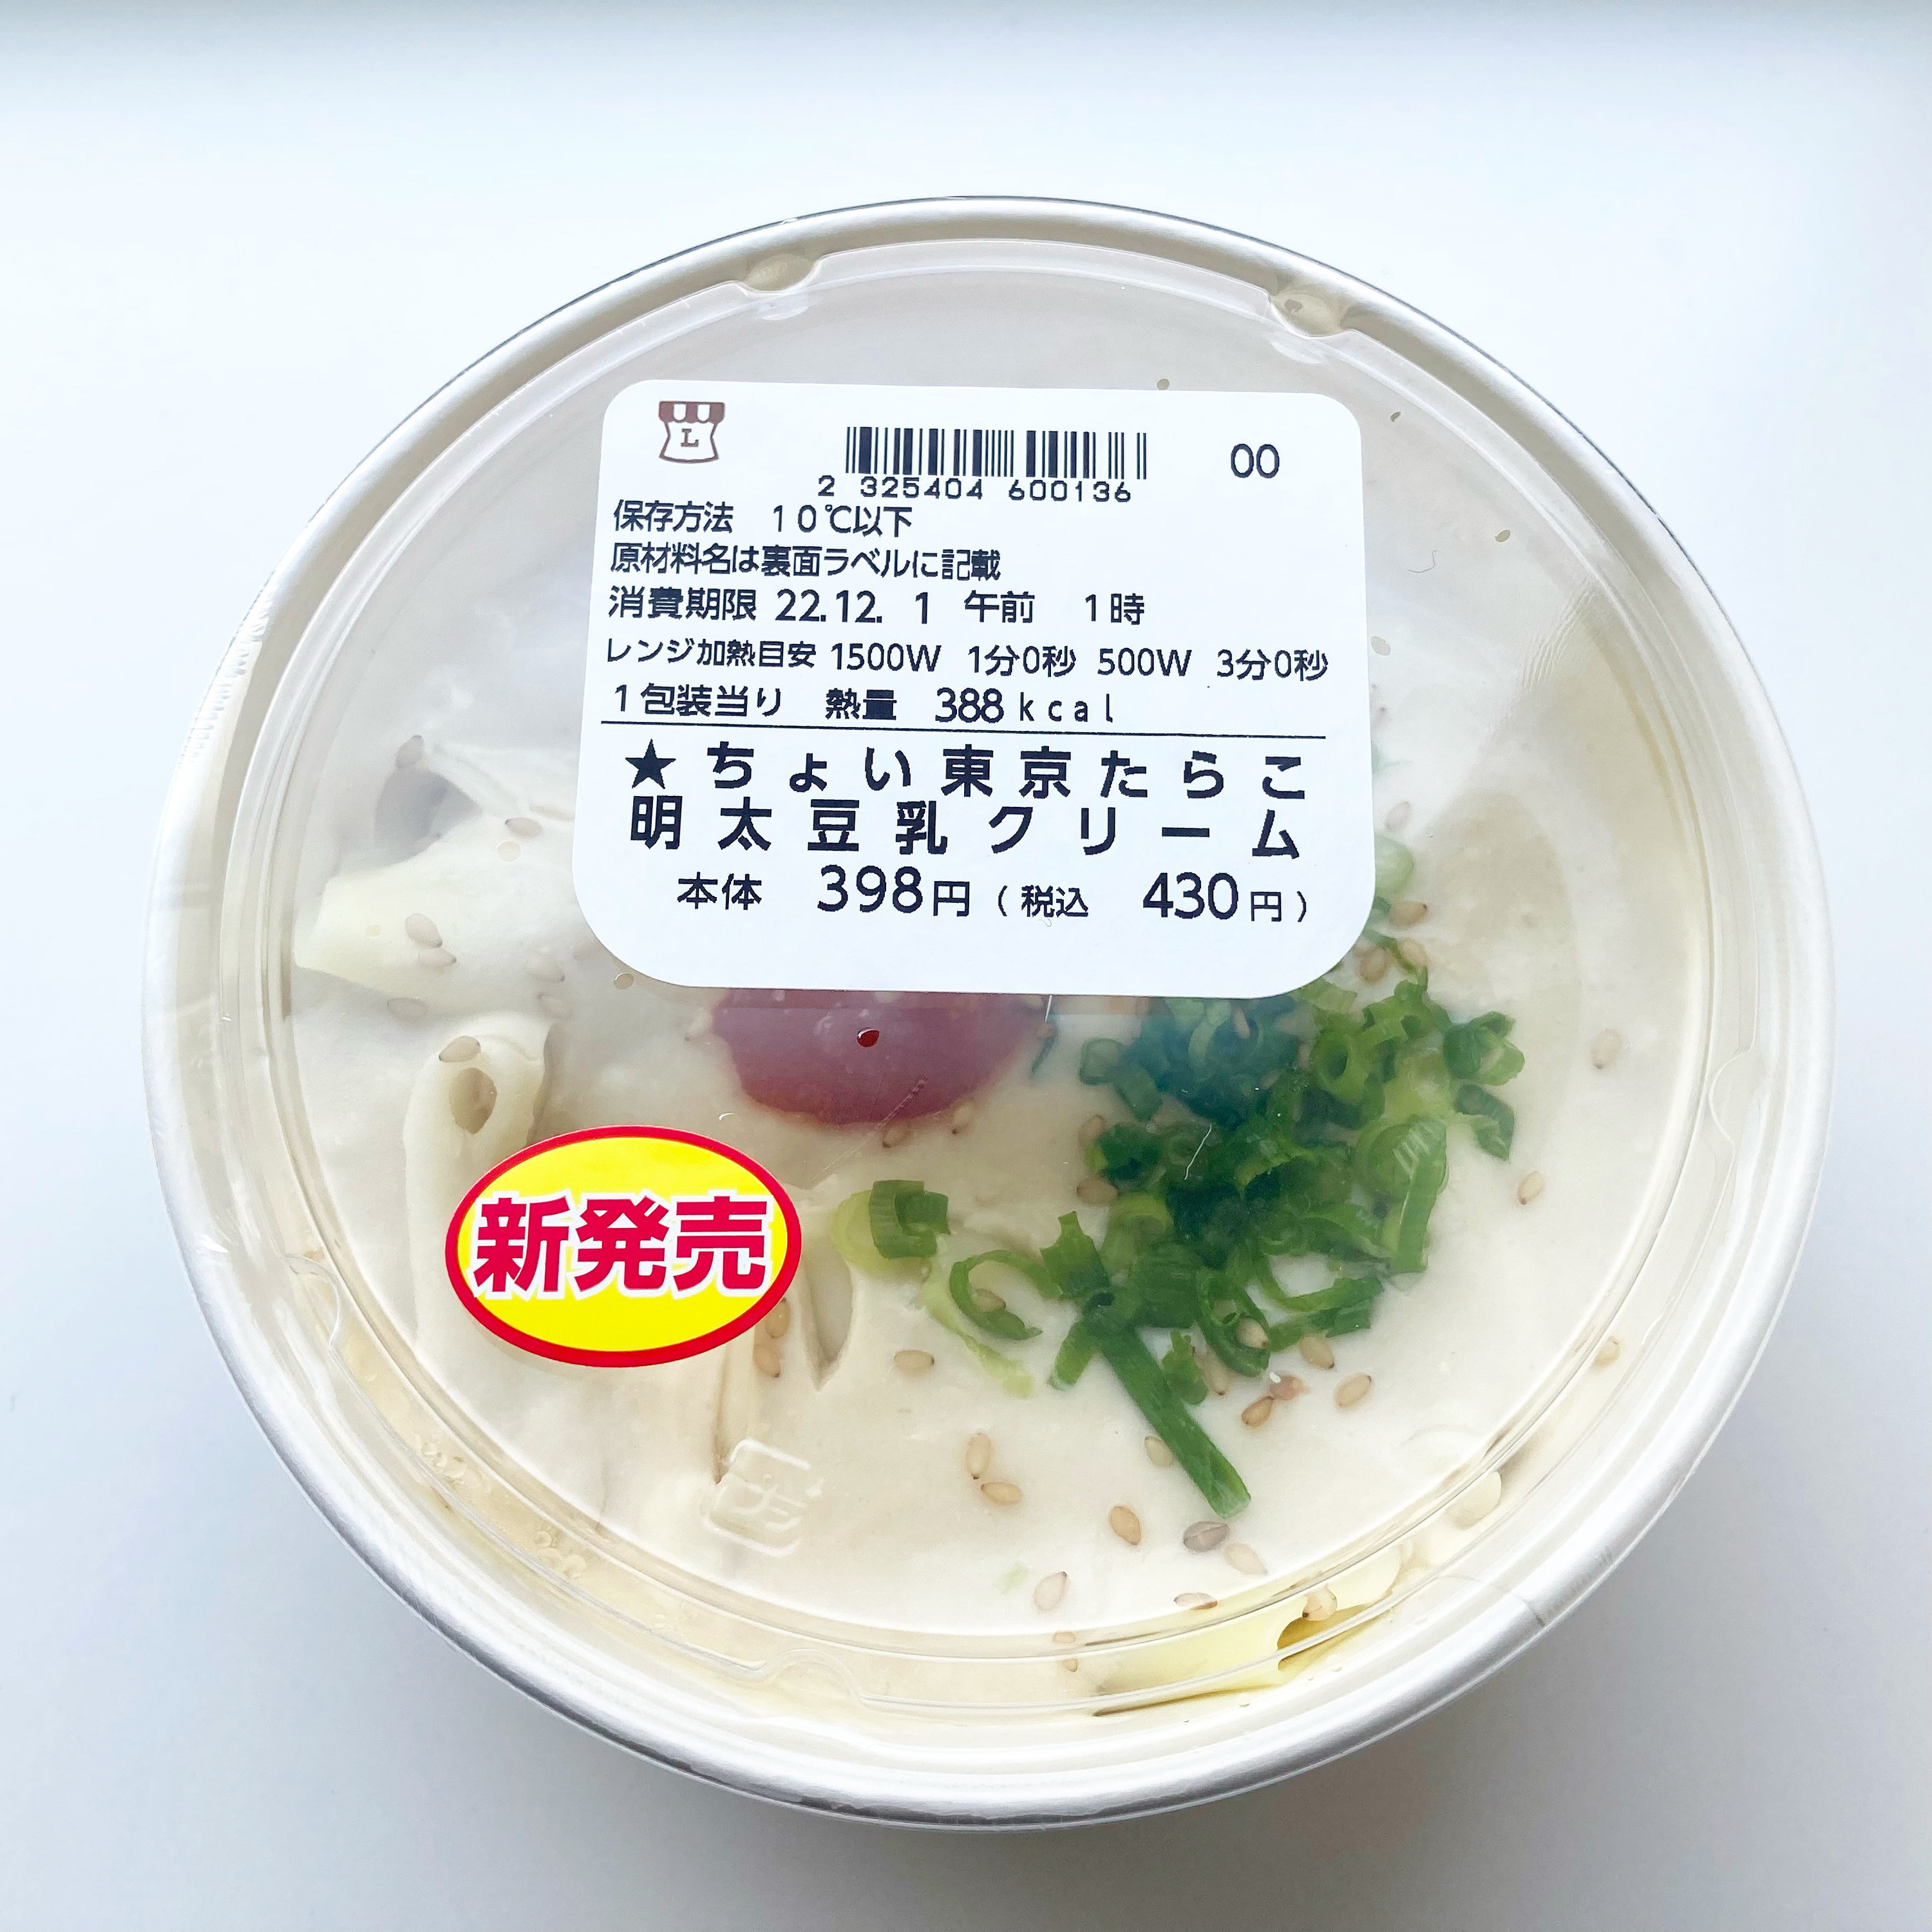 LAWSON（ローソン）のオススメの新商品「東京たらこスパゲティ監修 白味噌と豆乳の明太クリームパスタ」